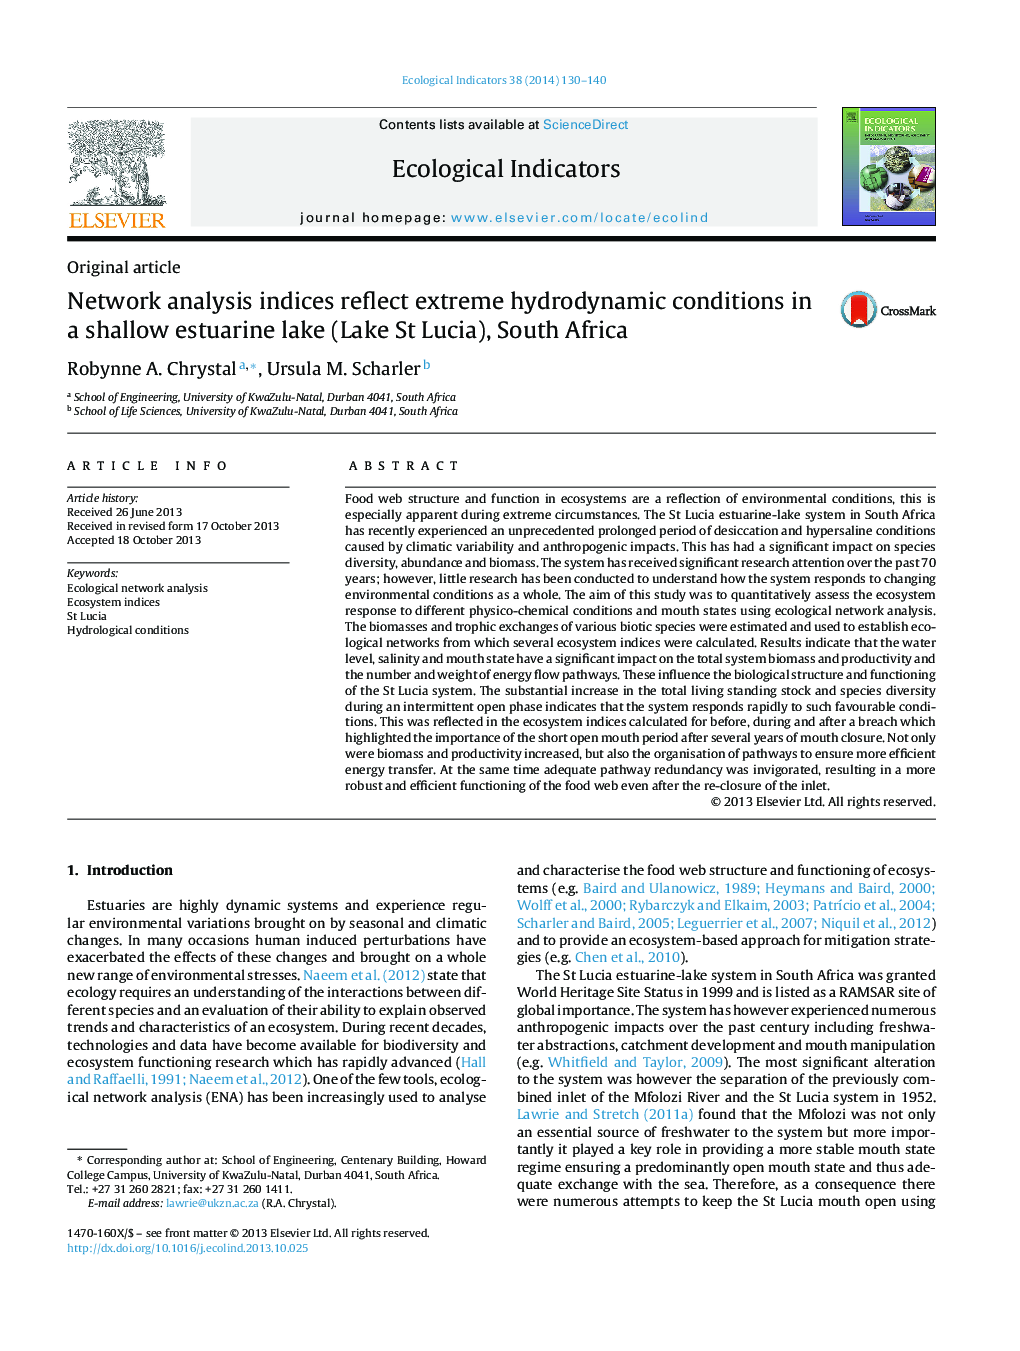 شاخص های تجزیه و تحلیل شبکه نشان دهنده شرایط هیدرودینامیکی شدید در یک دریاچه کم عمق دریایی (دریاچه سنت لوسیا)، آفریقای جنوبی 